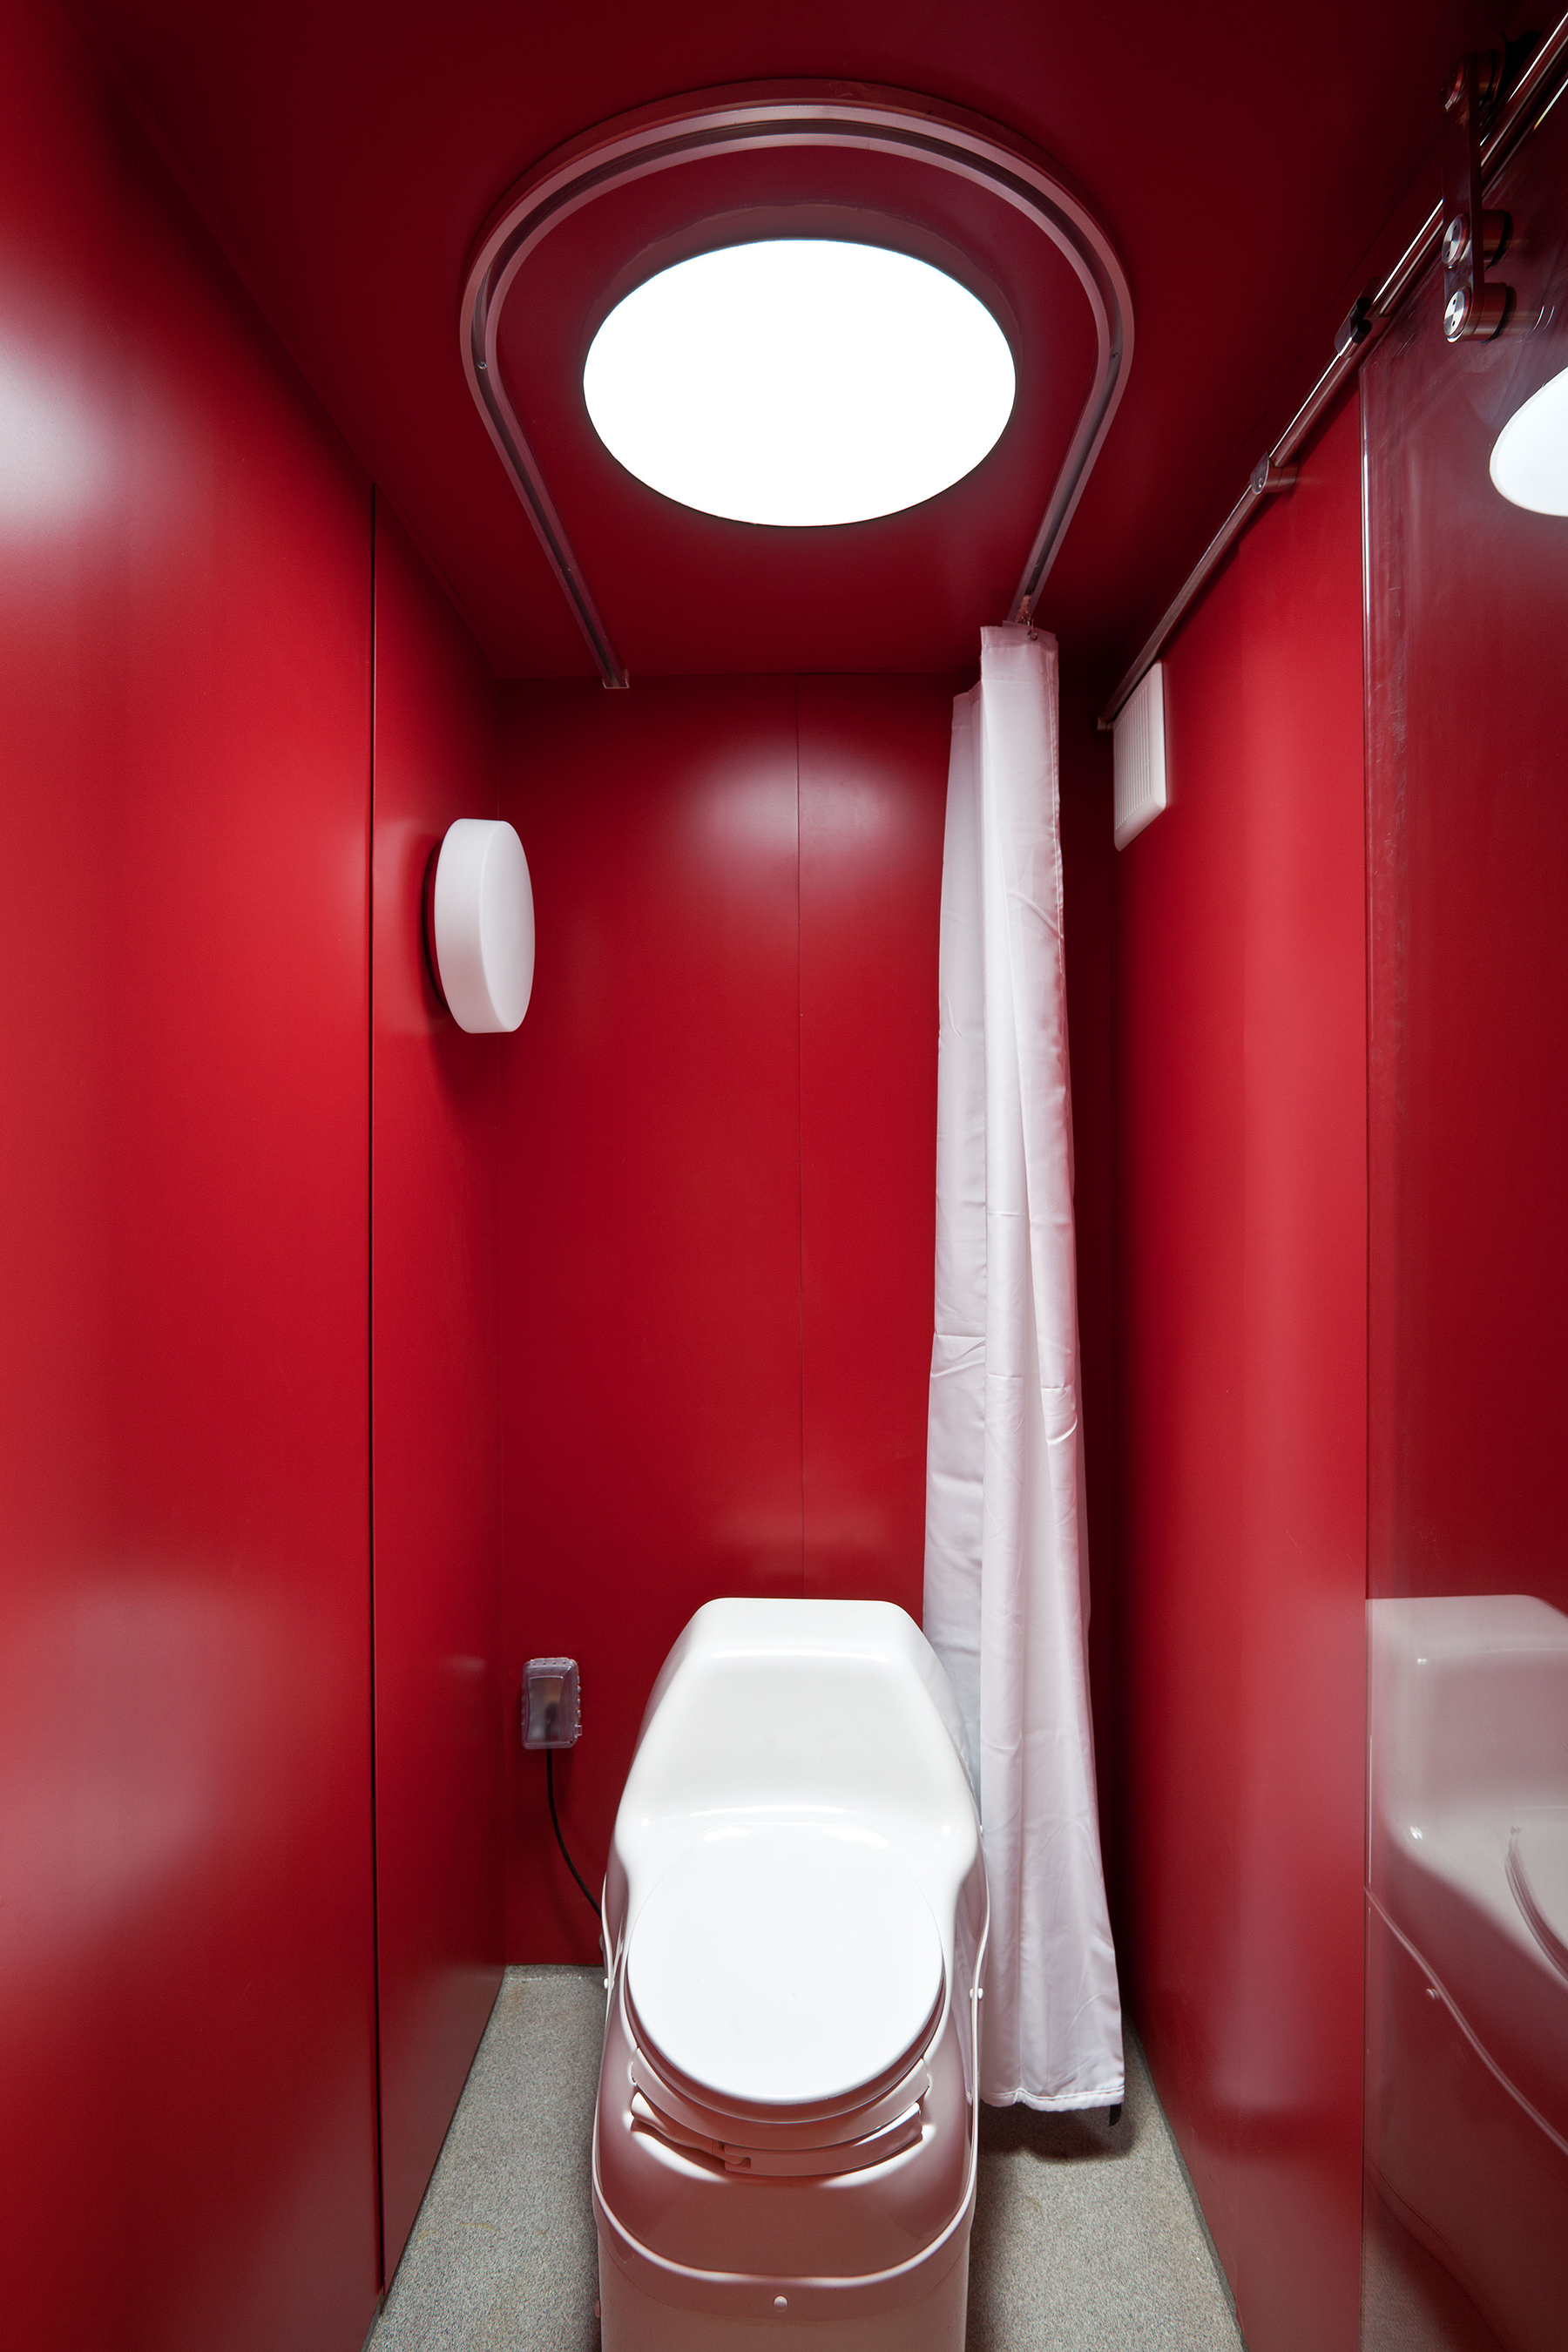 Kúpeľňa, pokrytá červeným plechom, je vybavená kompostovacou toaletou.